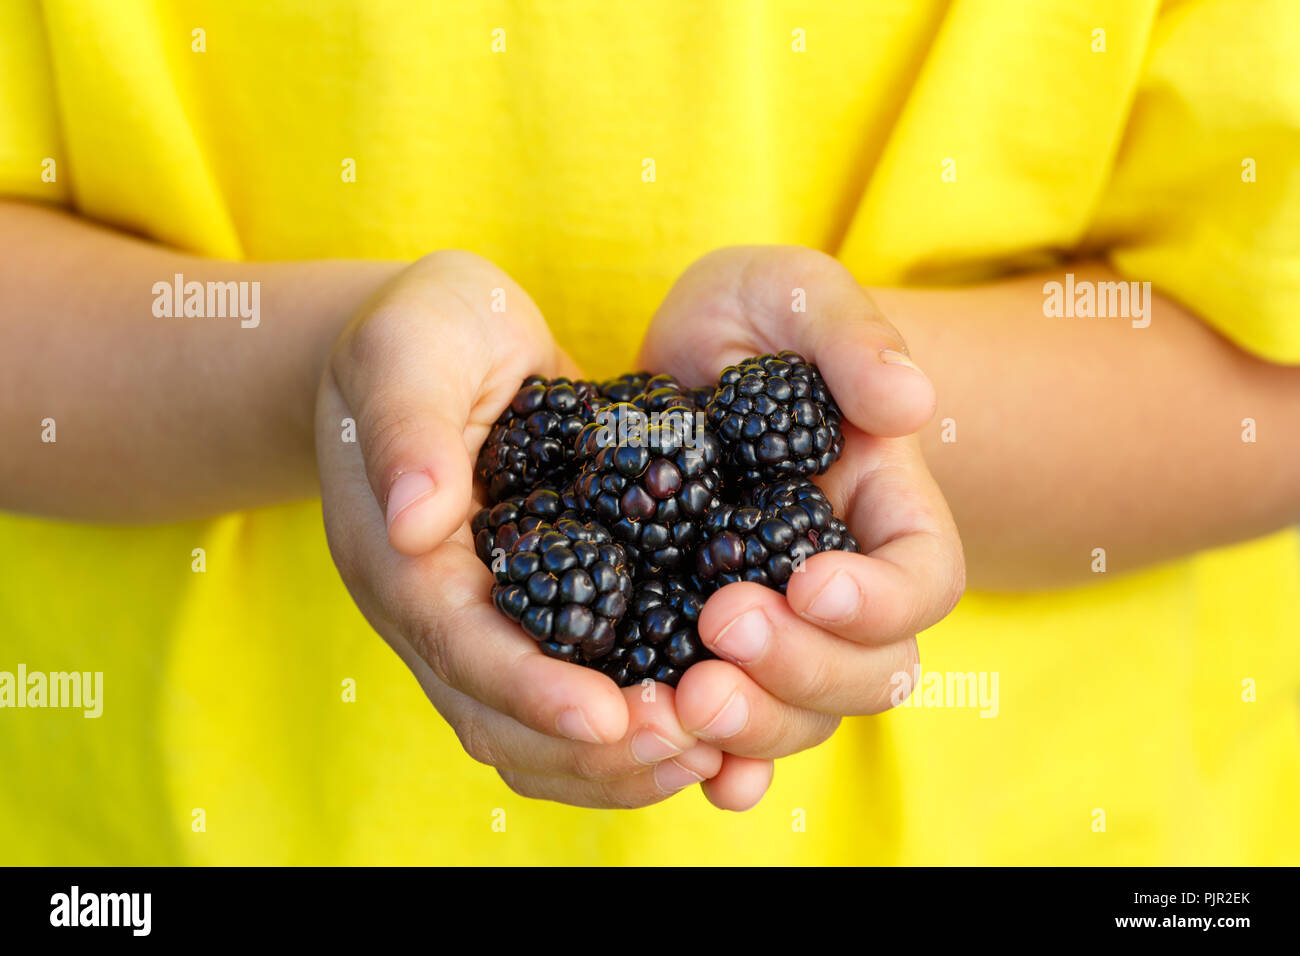 Des fruits à baies mûres blackberry fruits été hands holding enfant petit garçon piscine Banque D'Images